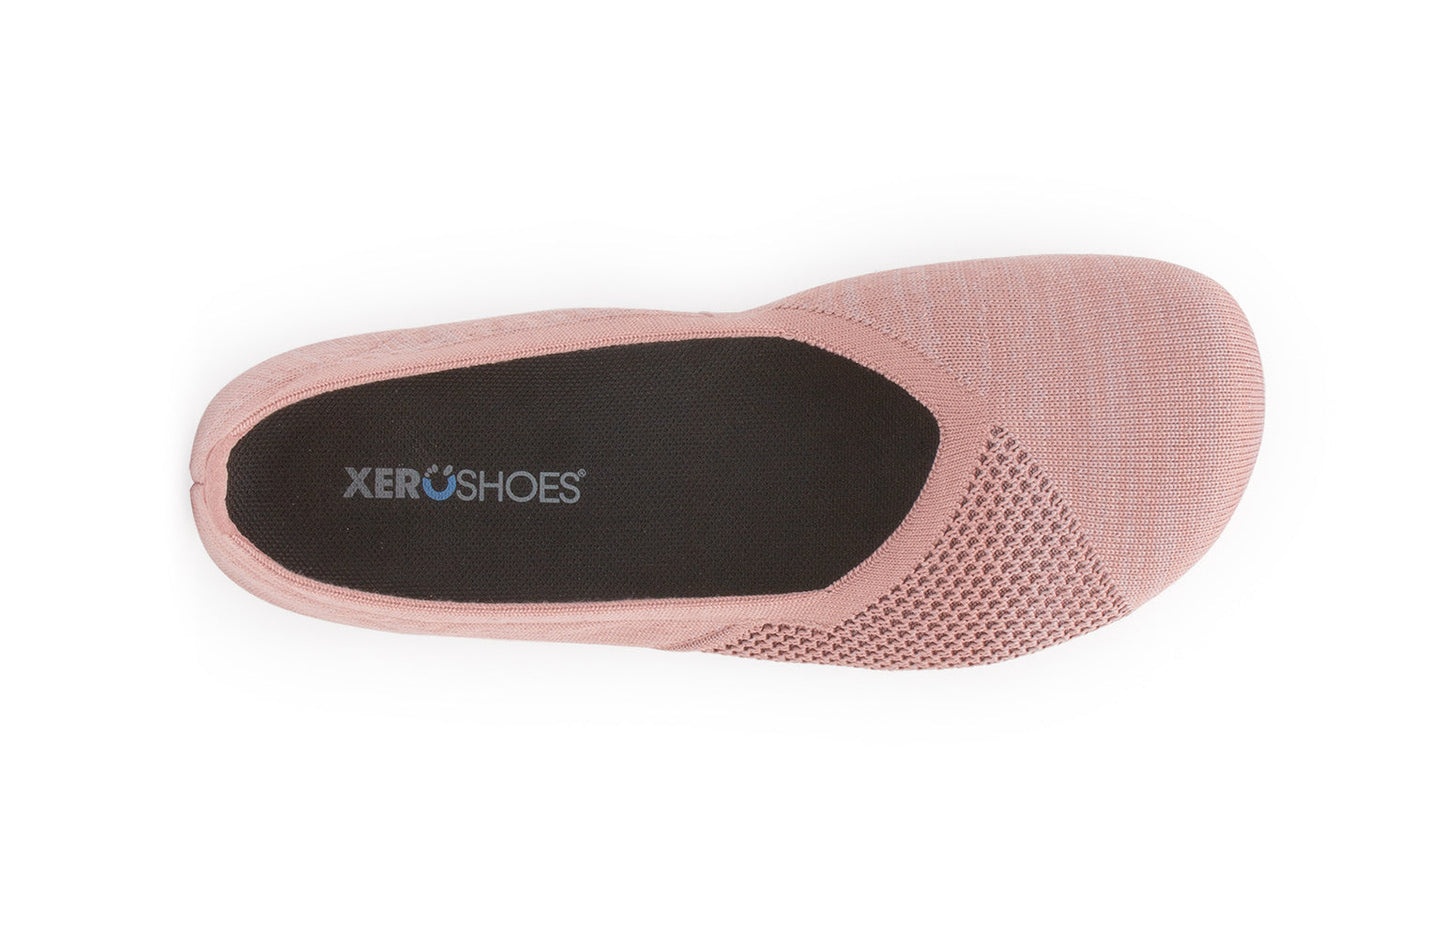 Xero Shoes Phoenix Knit Womens barfods ballerinaer til kvinder i farven rose, top